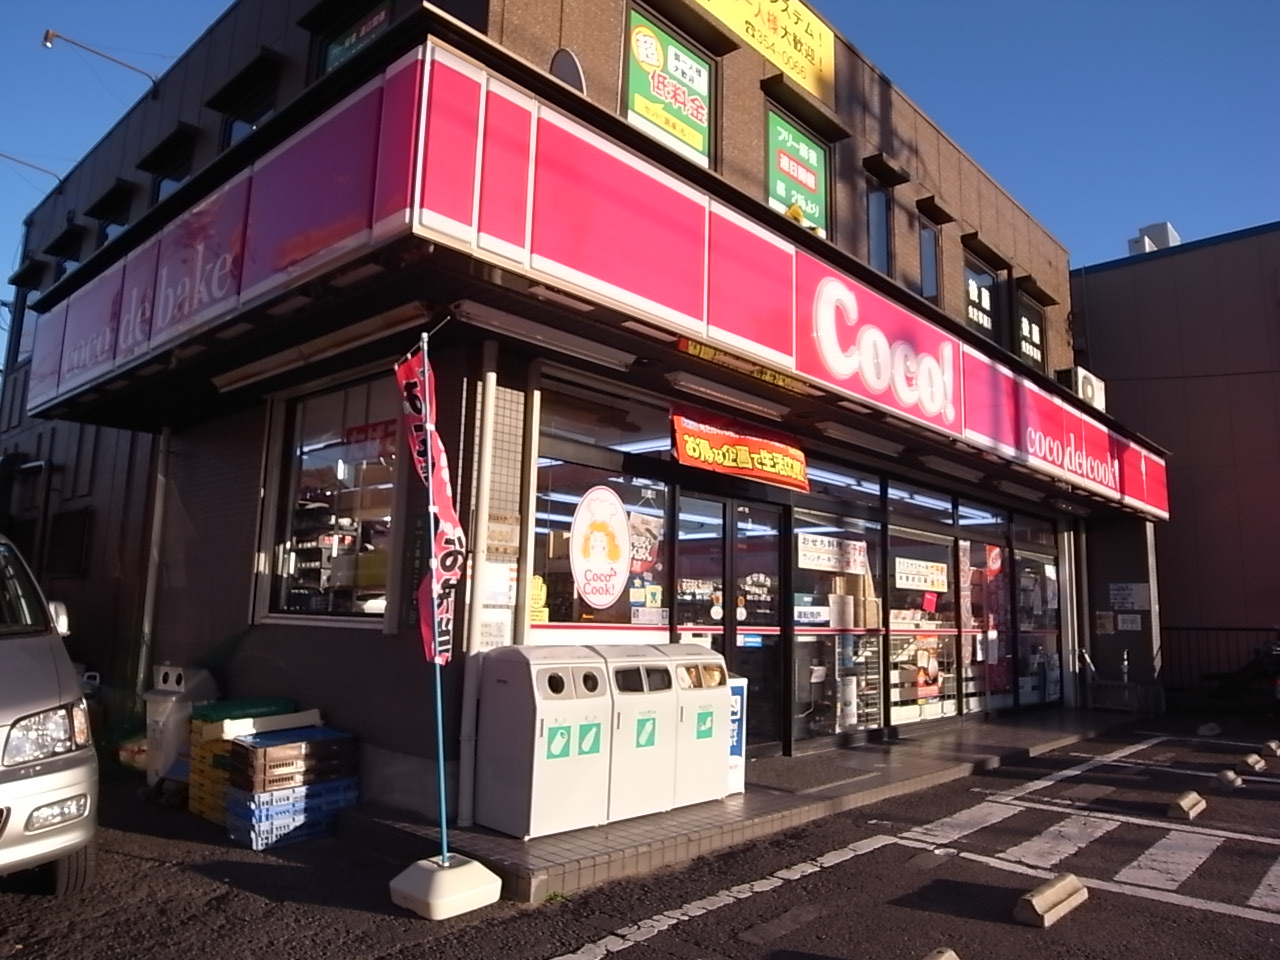 Convenience store. 144m to the Coco store Hatta store (convenience store)